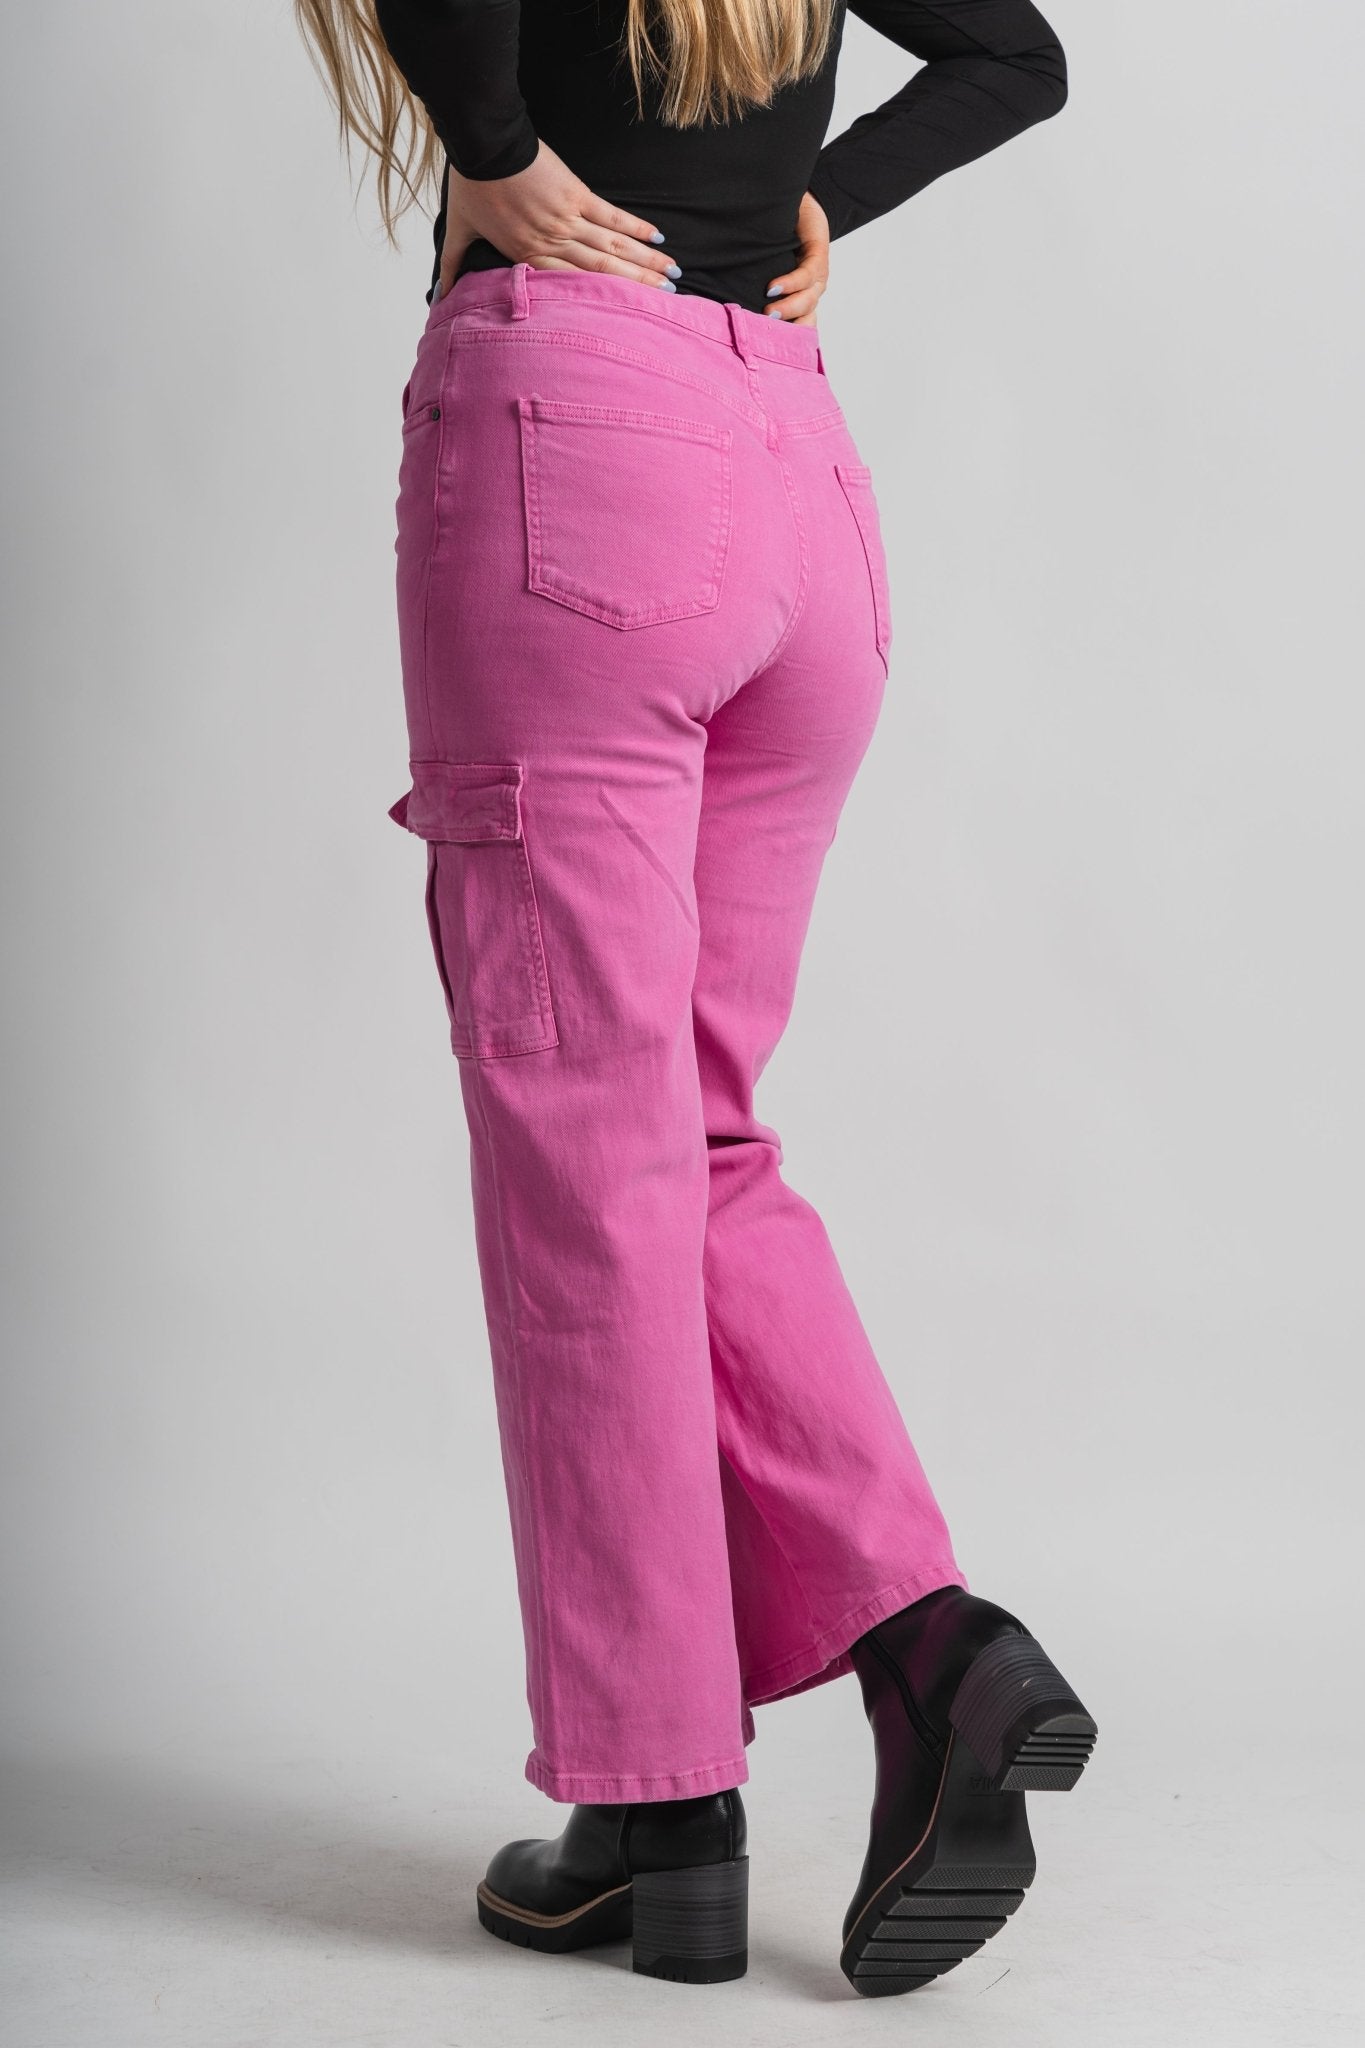 Pantalon straight rose fushia femme